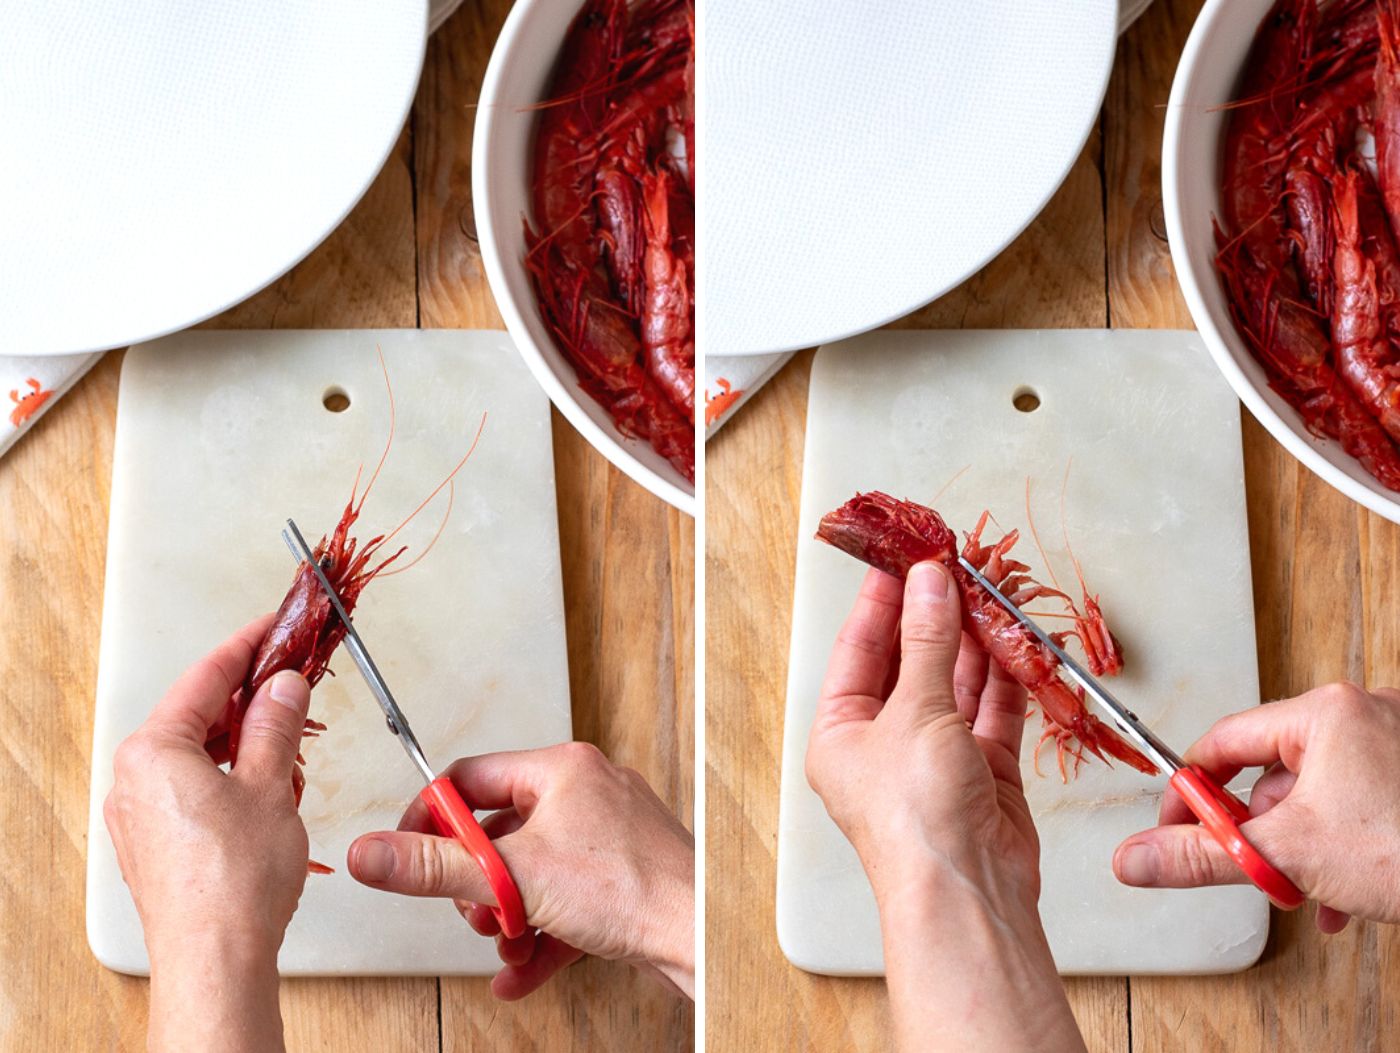 trimming shrimps with scissors